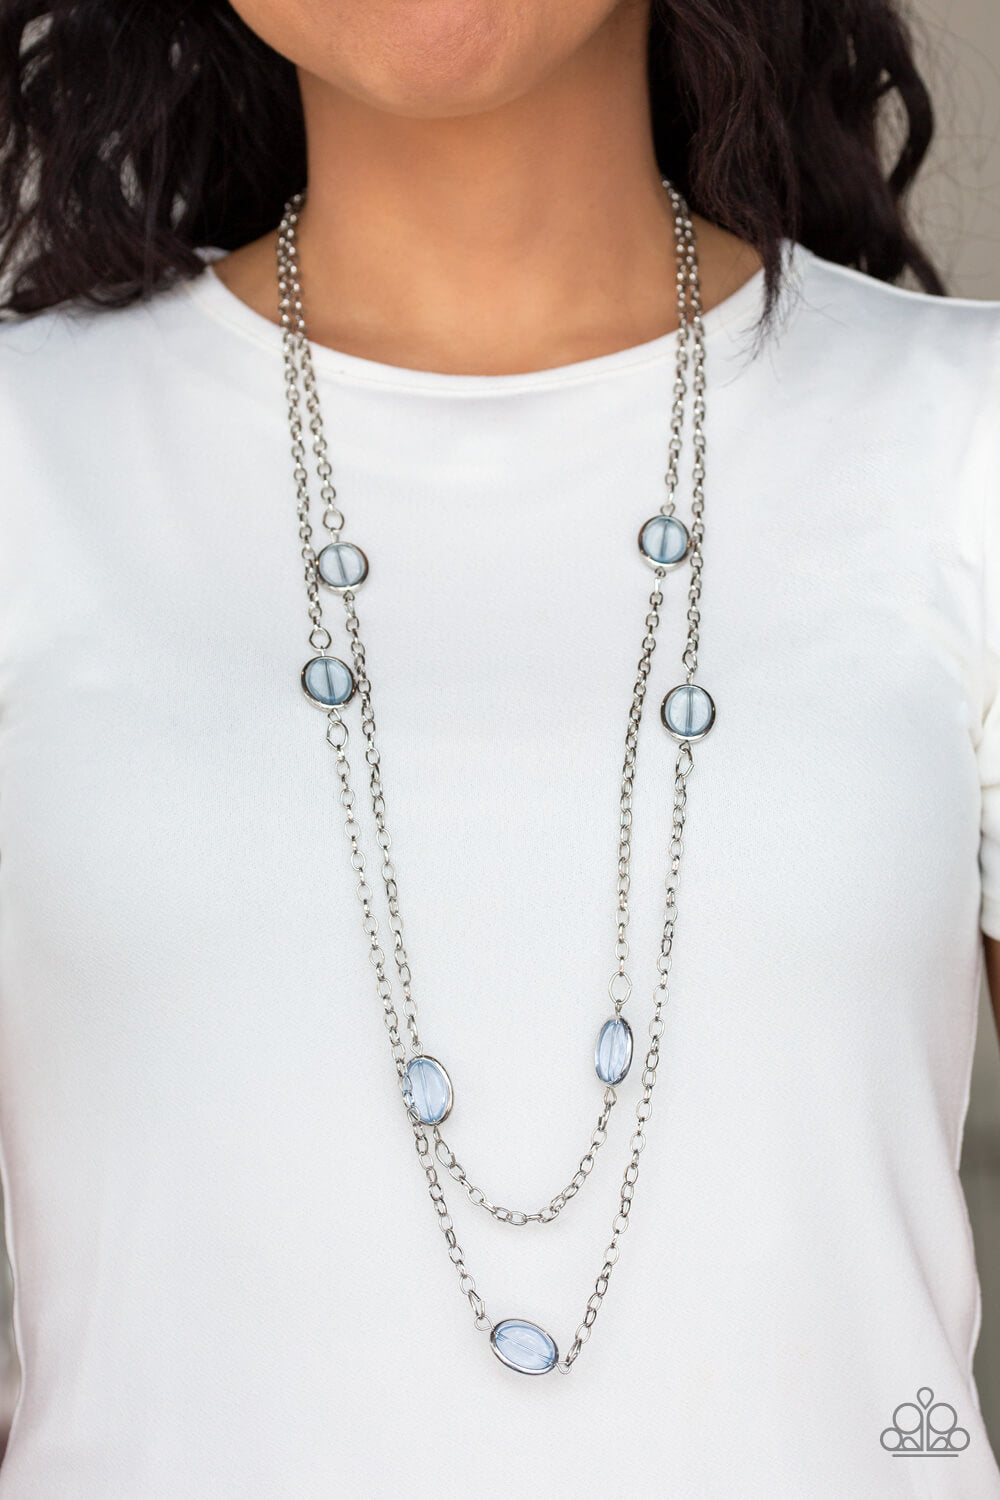 Back For More - Blue Necklace Set - Princess Glam Shop